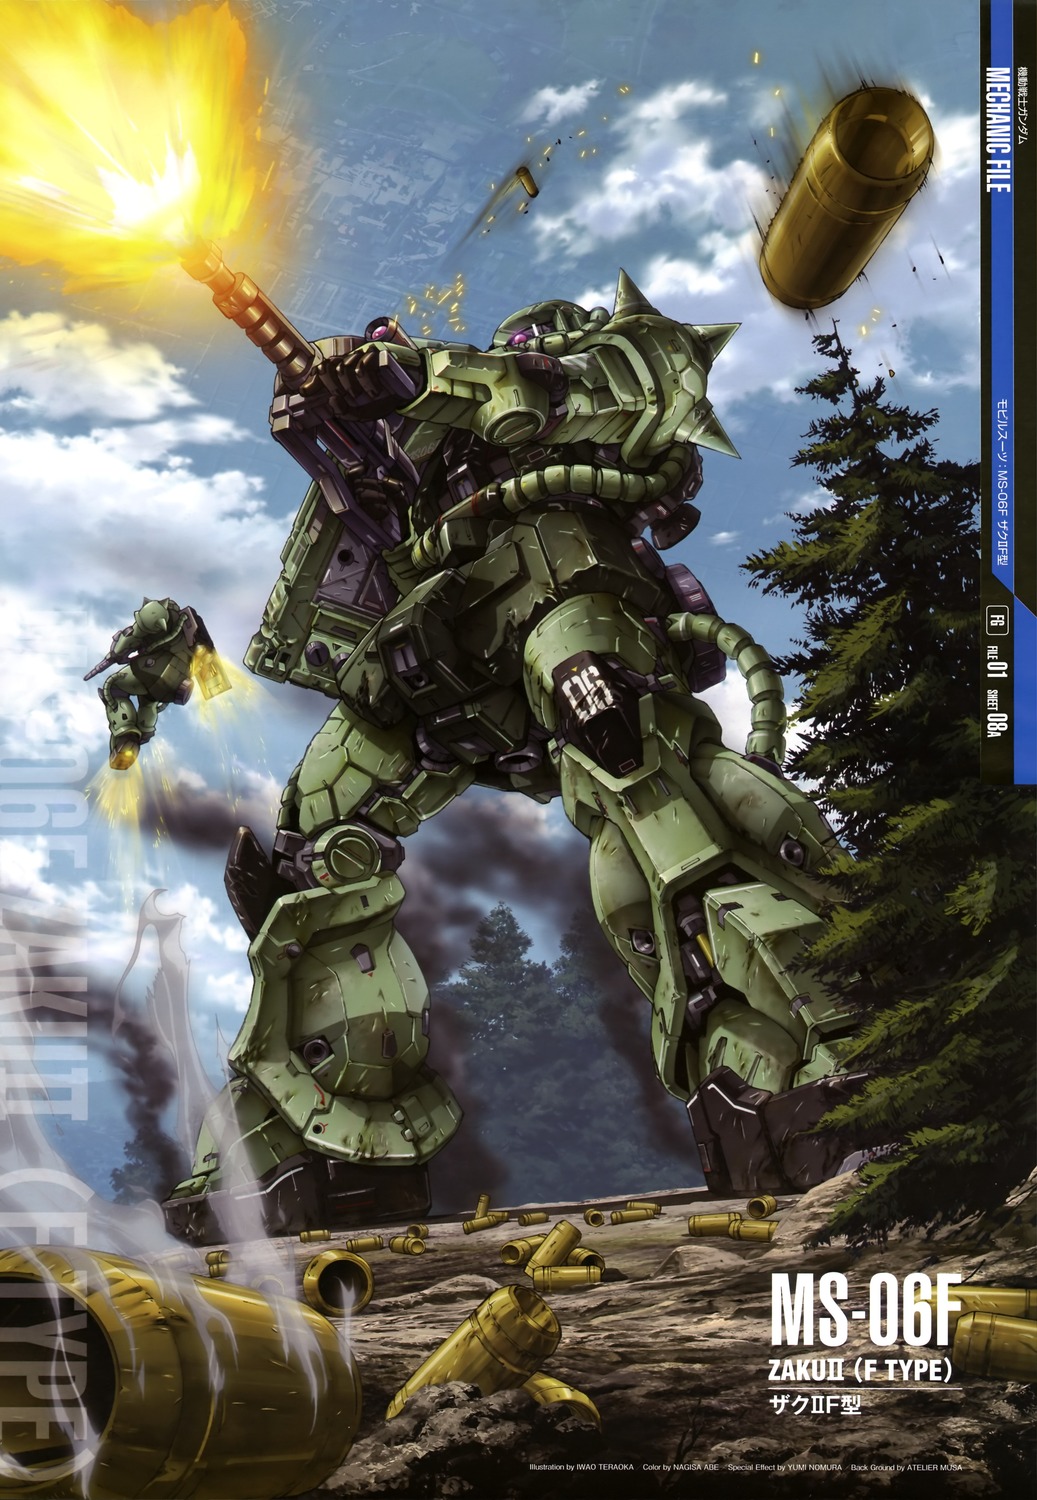 ... GUY: Mobile Suit Gundam Mechanic File - Wallpaper Size Images [Part 1